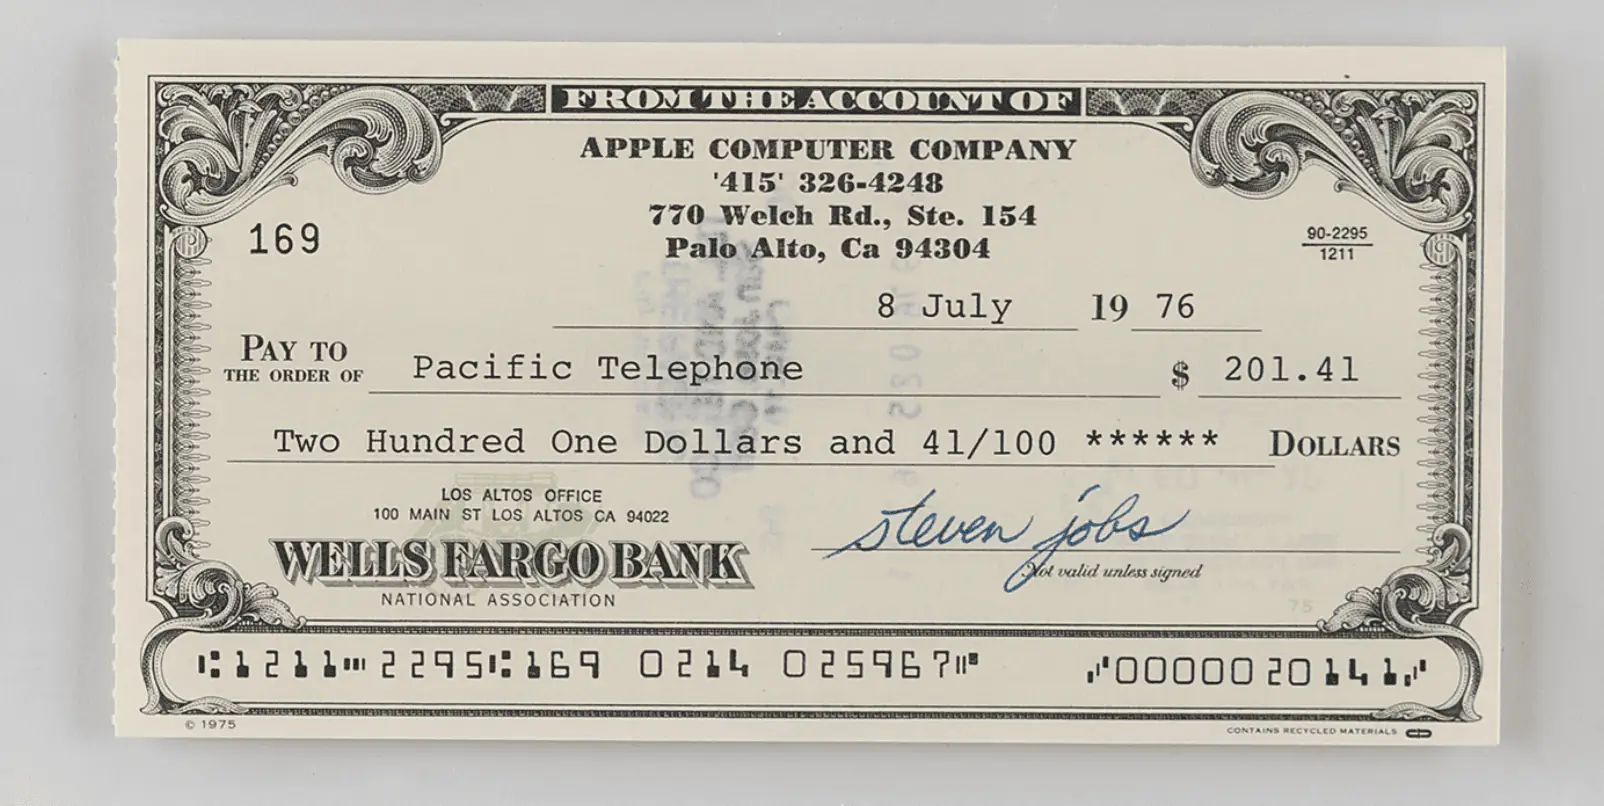 Steve Jobs's $200 check